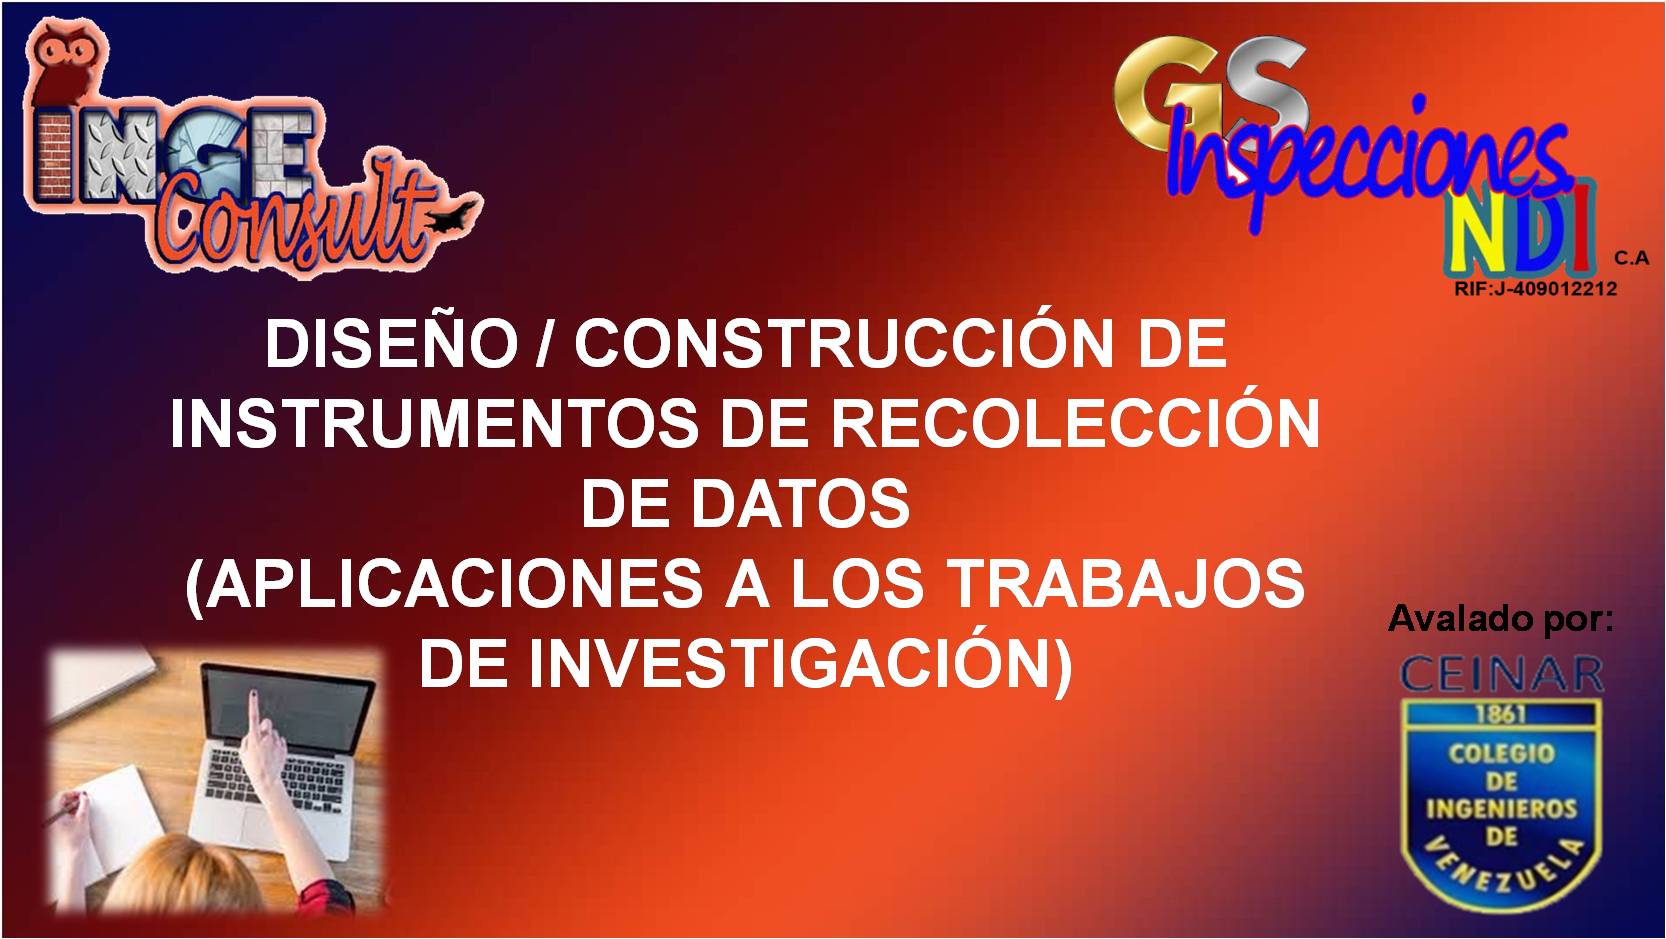 DISEÑO / CONSTRUCCIÓN DE INSTRUMENTOS DE RECOLECCIÓN DE DATOS